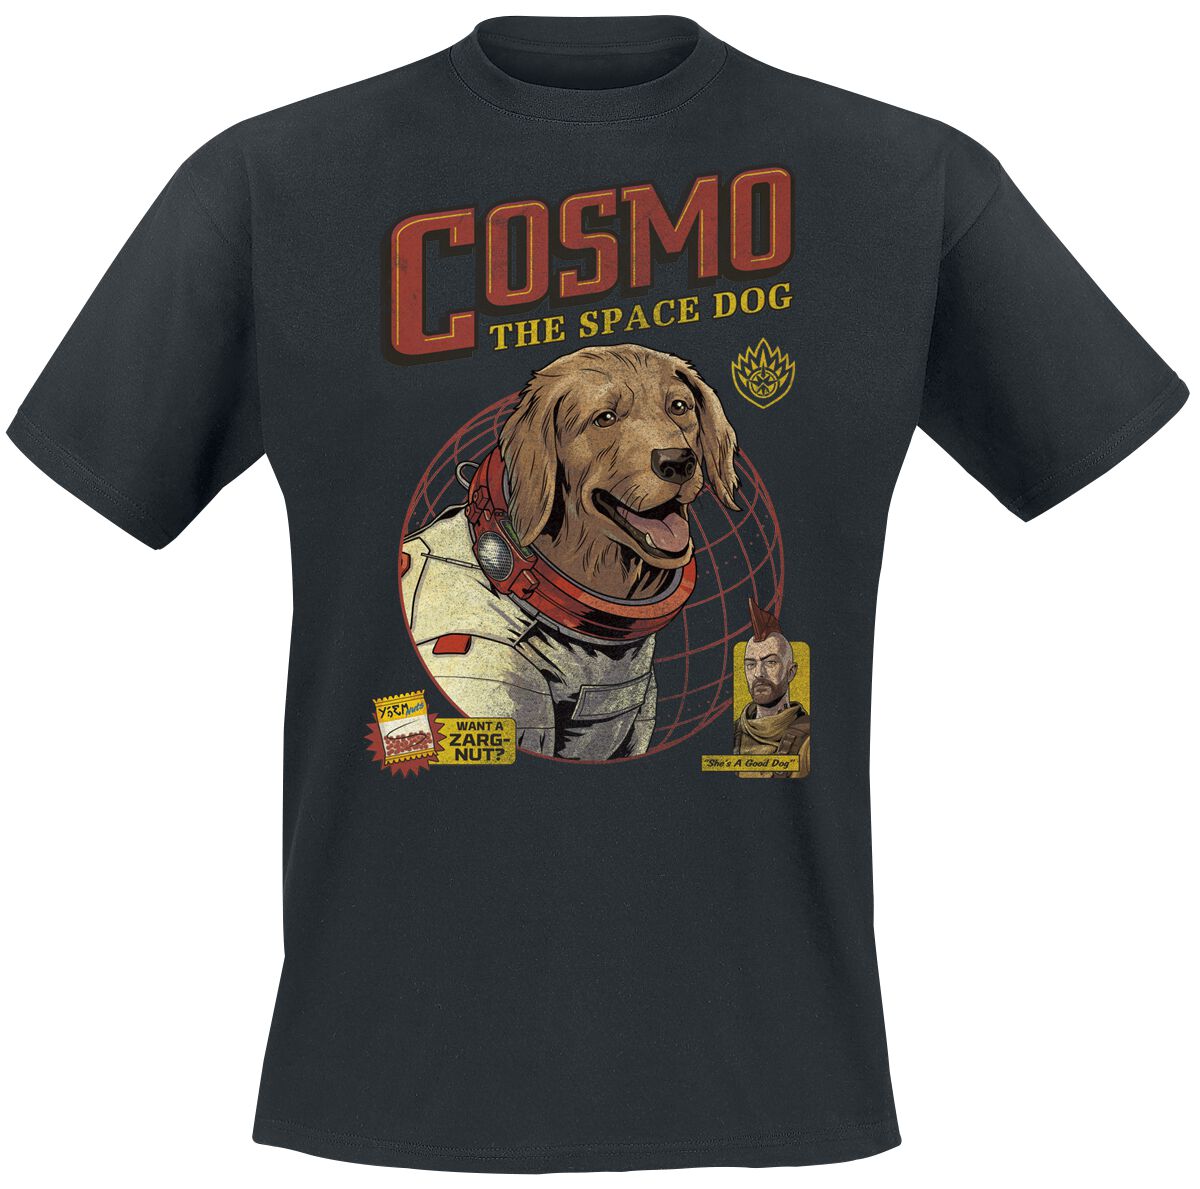 Guardians Of The Galaxy - Marvel T-Shirt - Vol. 3 - Cosmo -The Space Dog - S bis XXL - für Männer - Größe L - schwarz  - EMP exklusives Merchandise!